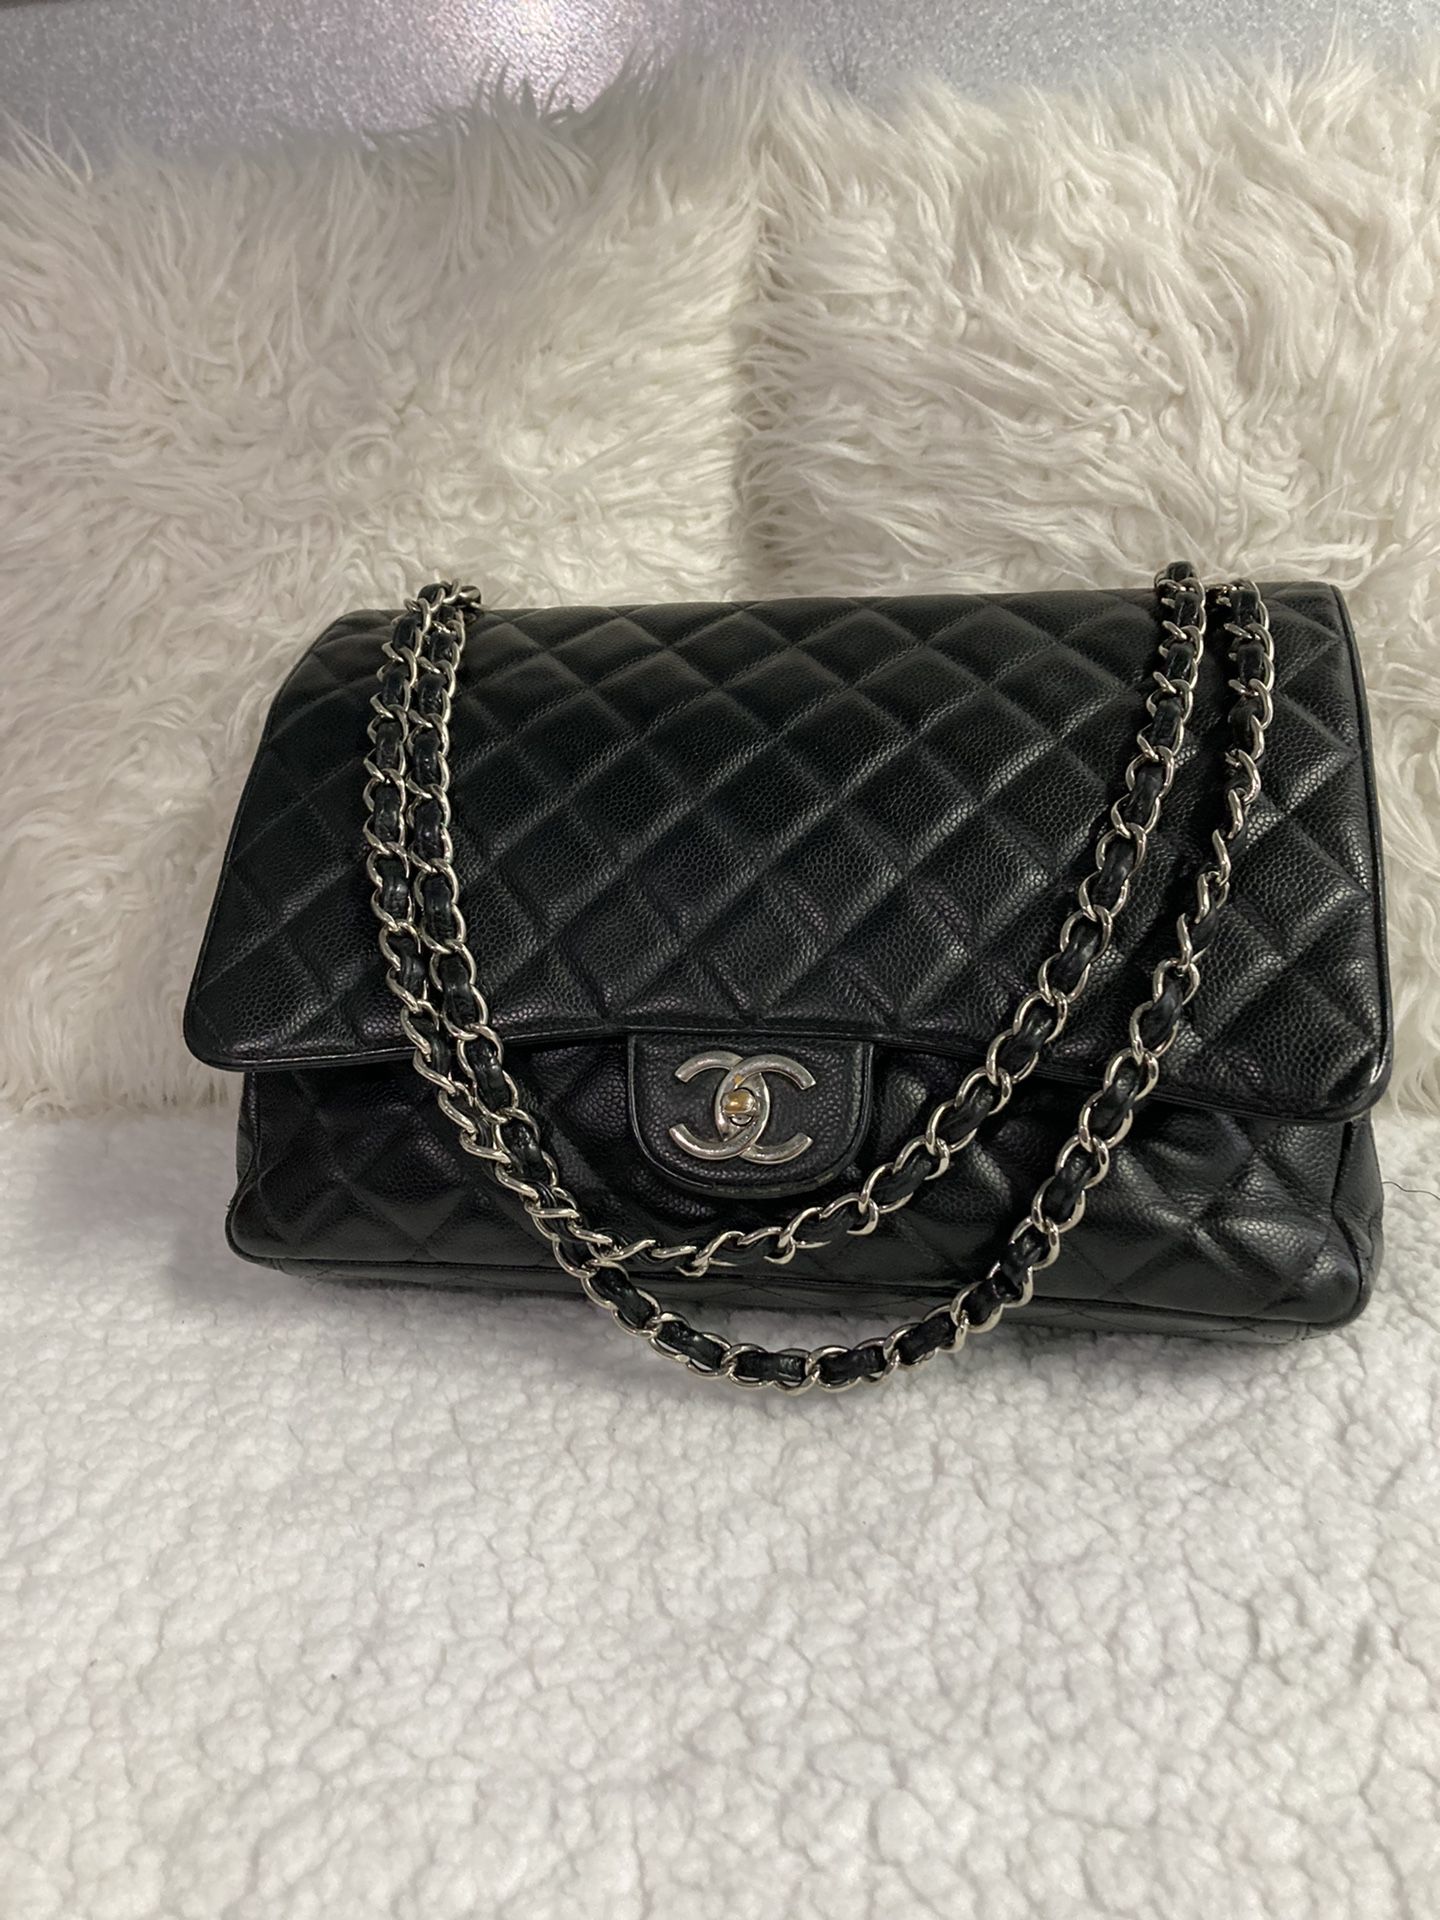 Chanel Large Bag